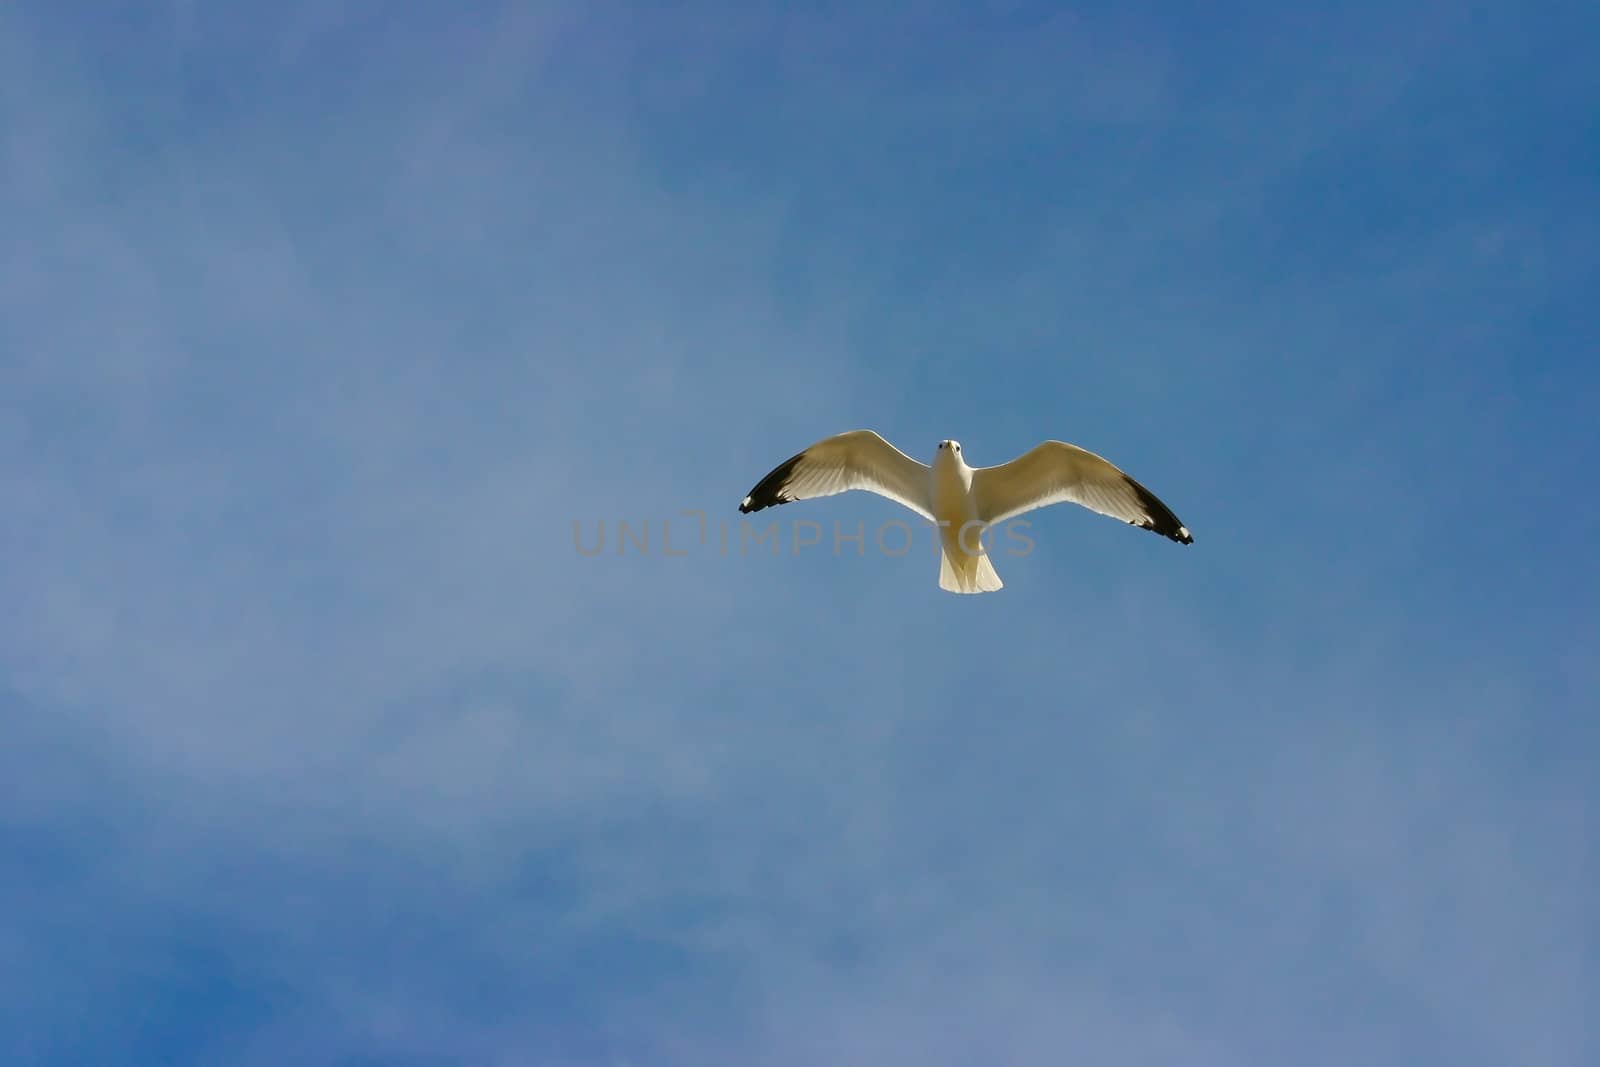 A lone seagull in a cloudy blue sky